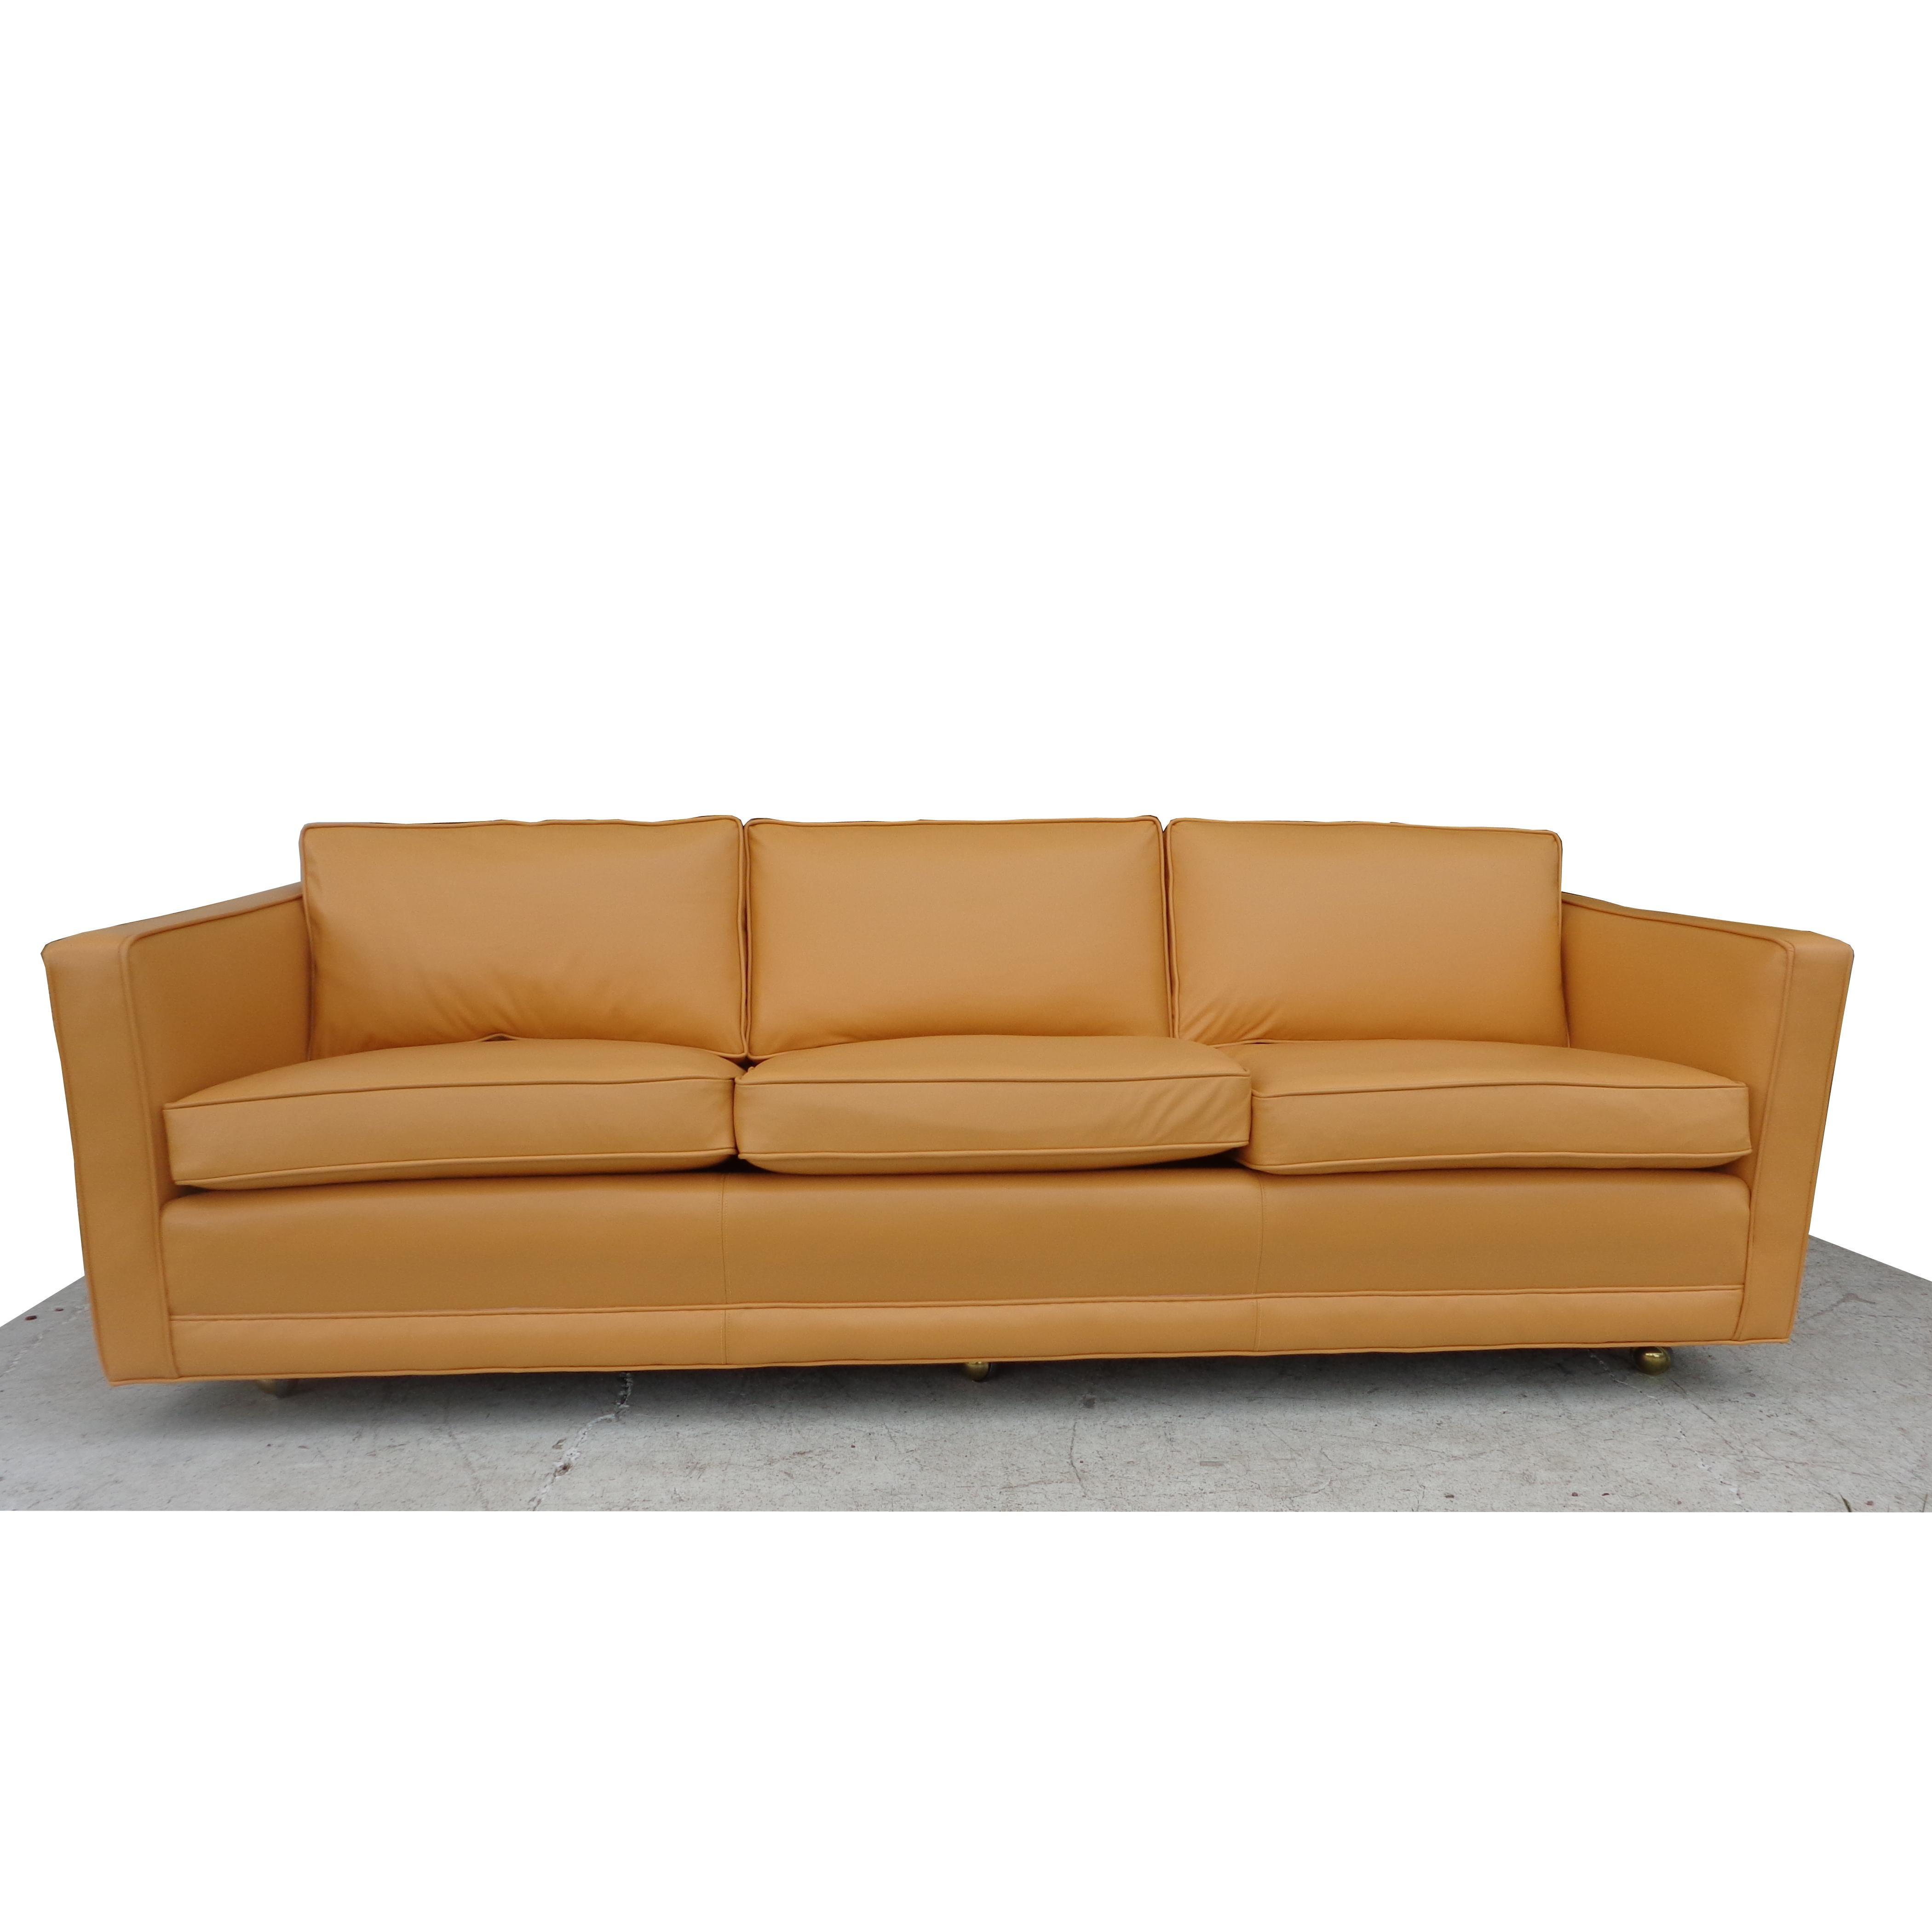 Modernes Sofa im Dunbar-Stil

Gut verarbeitetes, flaches Sofa von einem etablierten Möbelhersteller im Mittleren Westen. Kürzlich in reichem Karamellleder restauriert. 
Hergestellt mit Lasagna-Stützbändern, ähnlich der Konstruktion der Dunbar-Möbel.